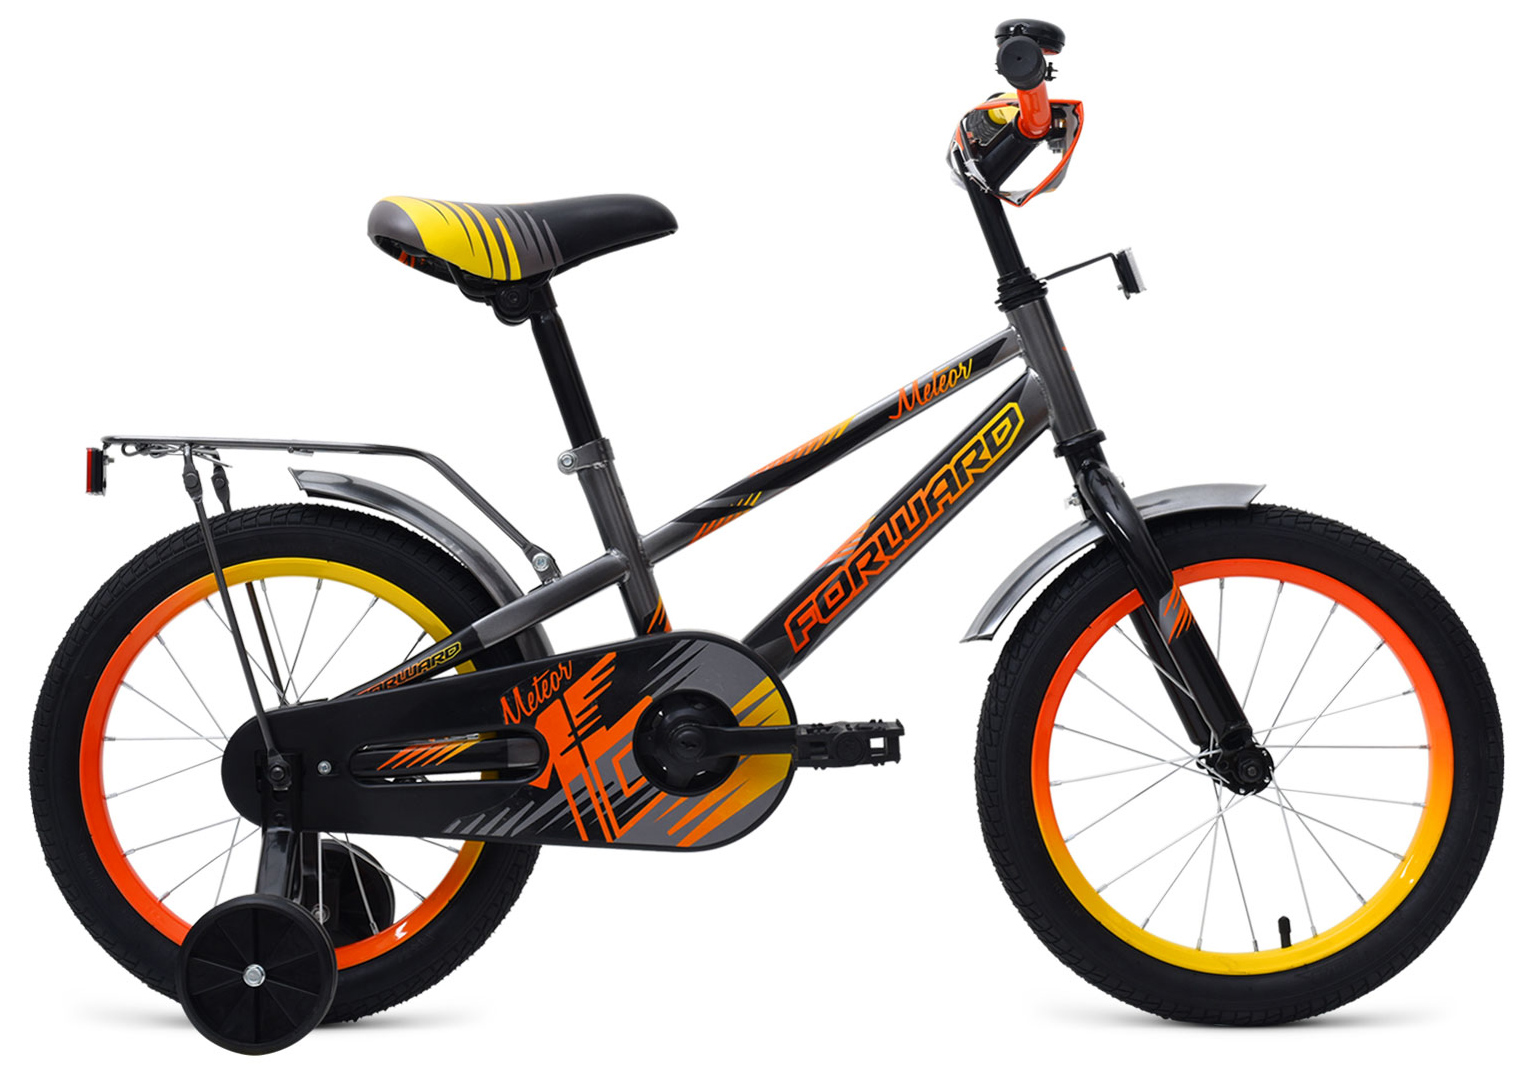  Отзывы о Трехколесный детский велосипед Forward Meteor 16 2019